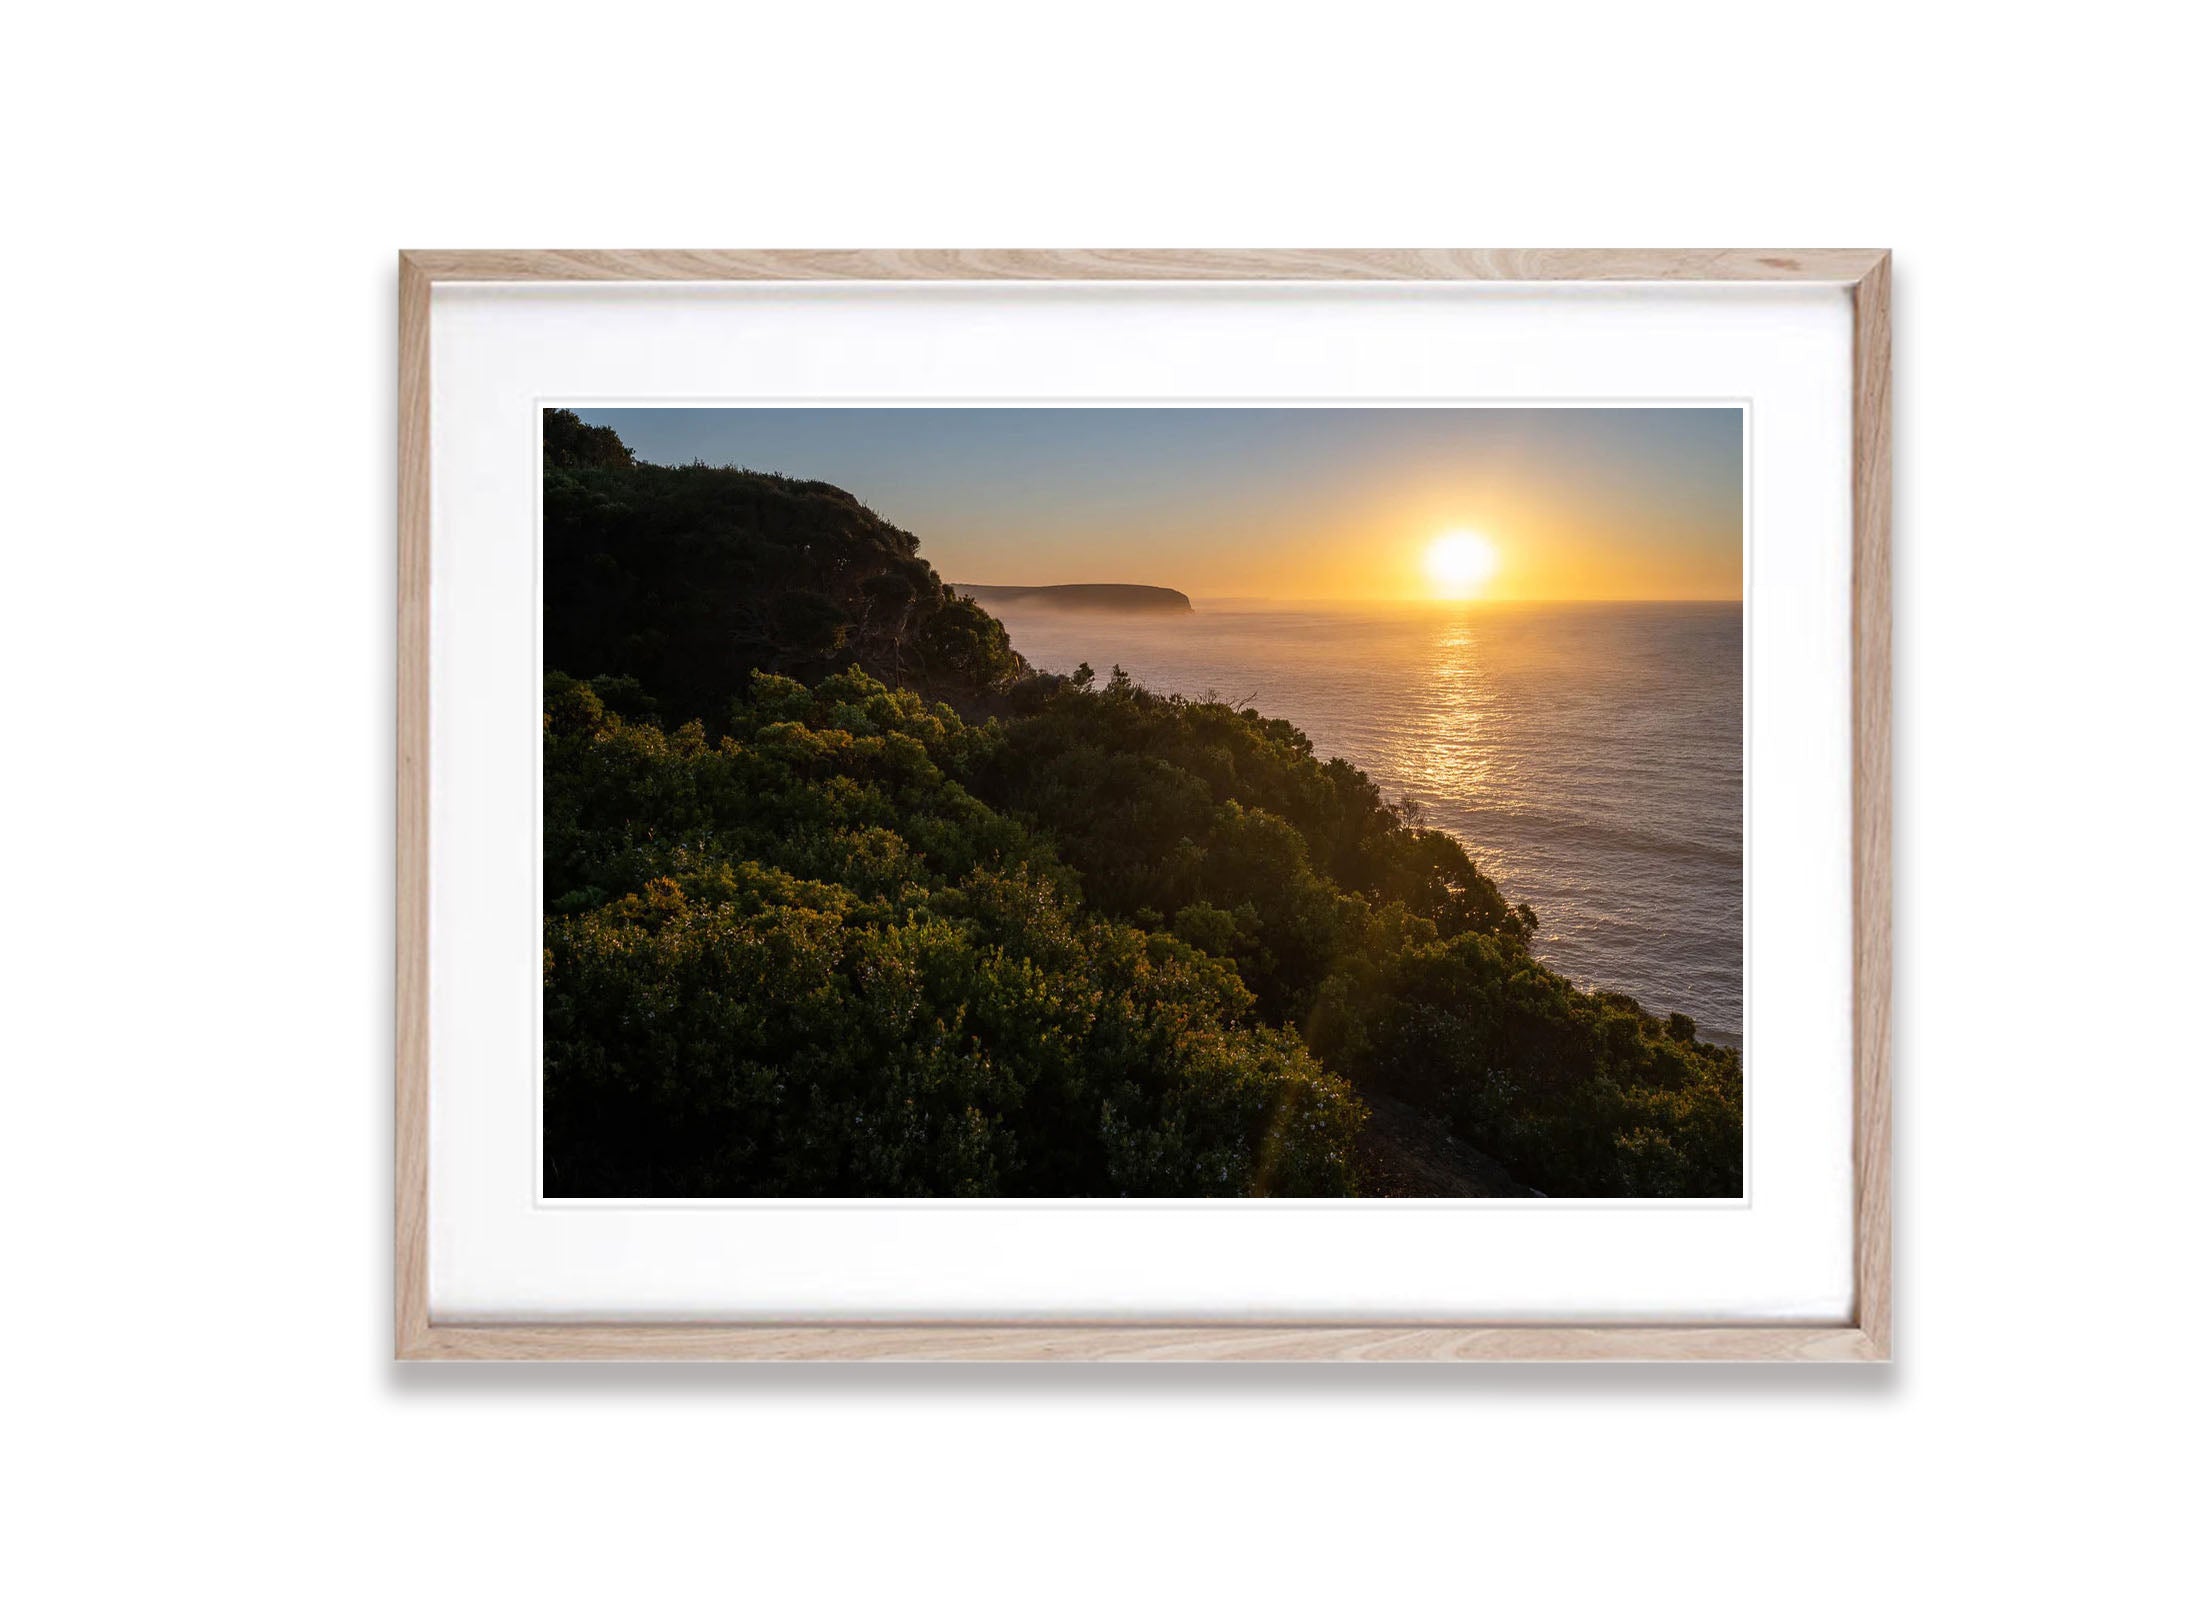 Cape Schanck Sunrise #2, Mornington Peninsula